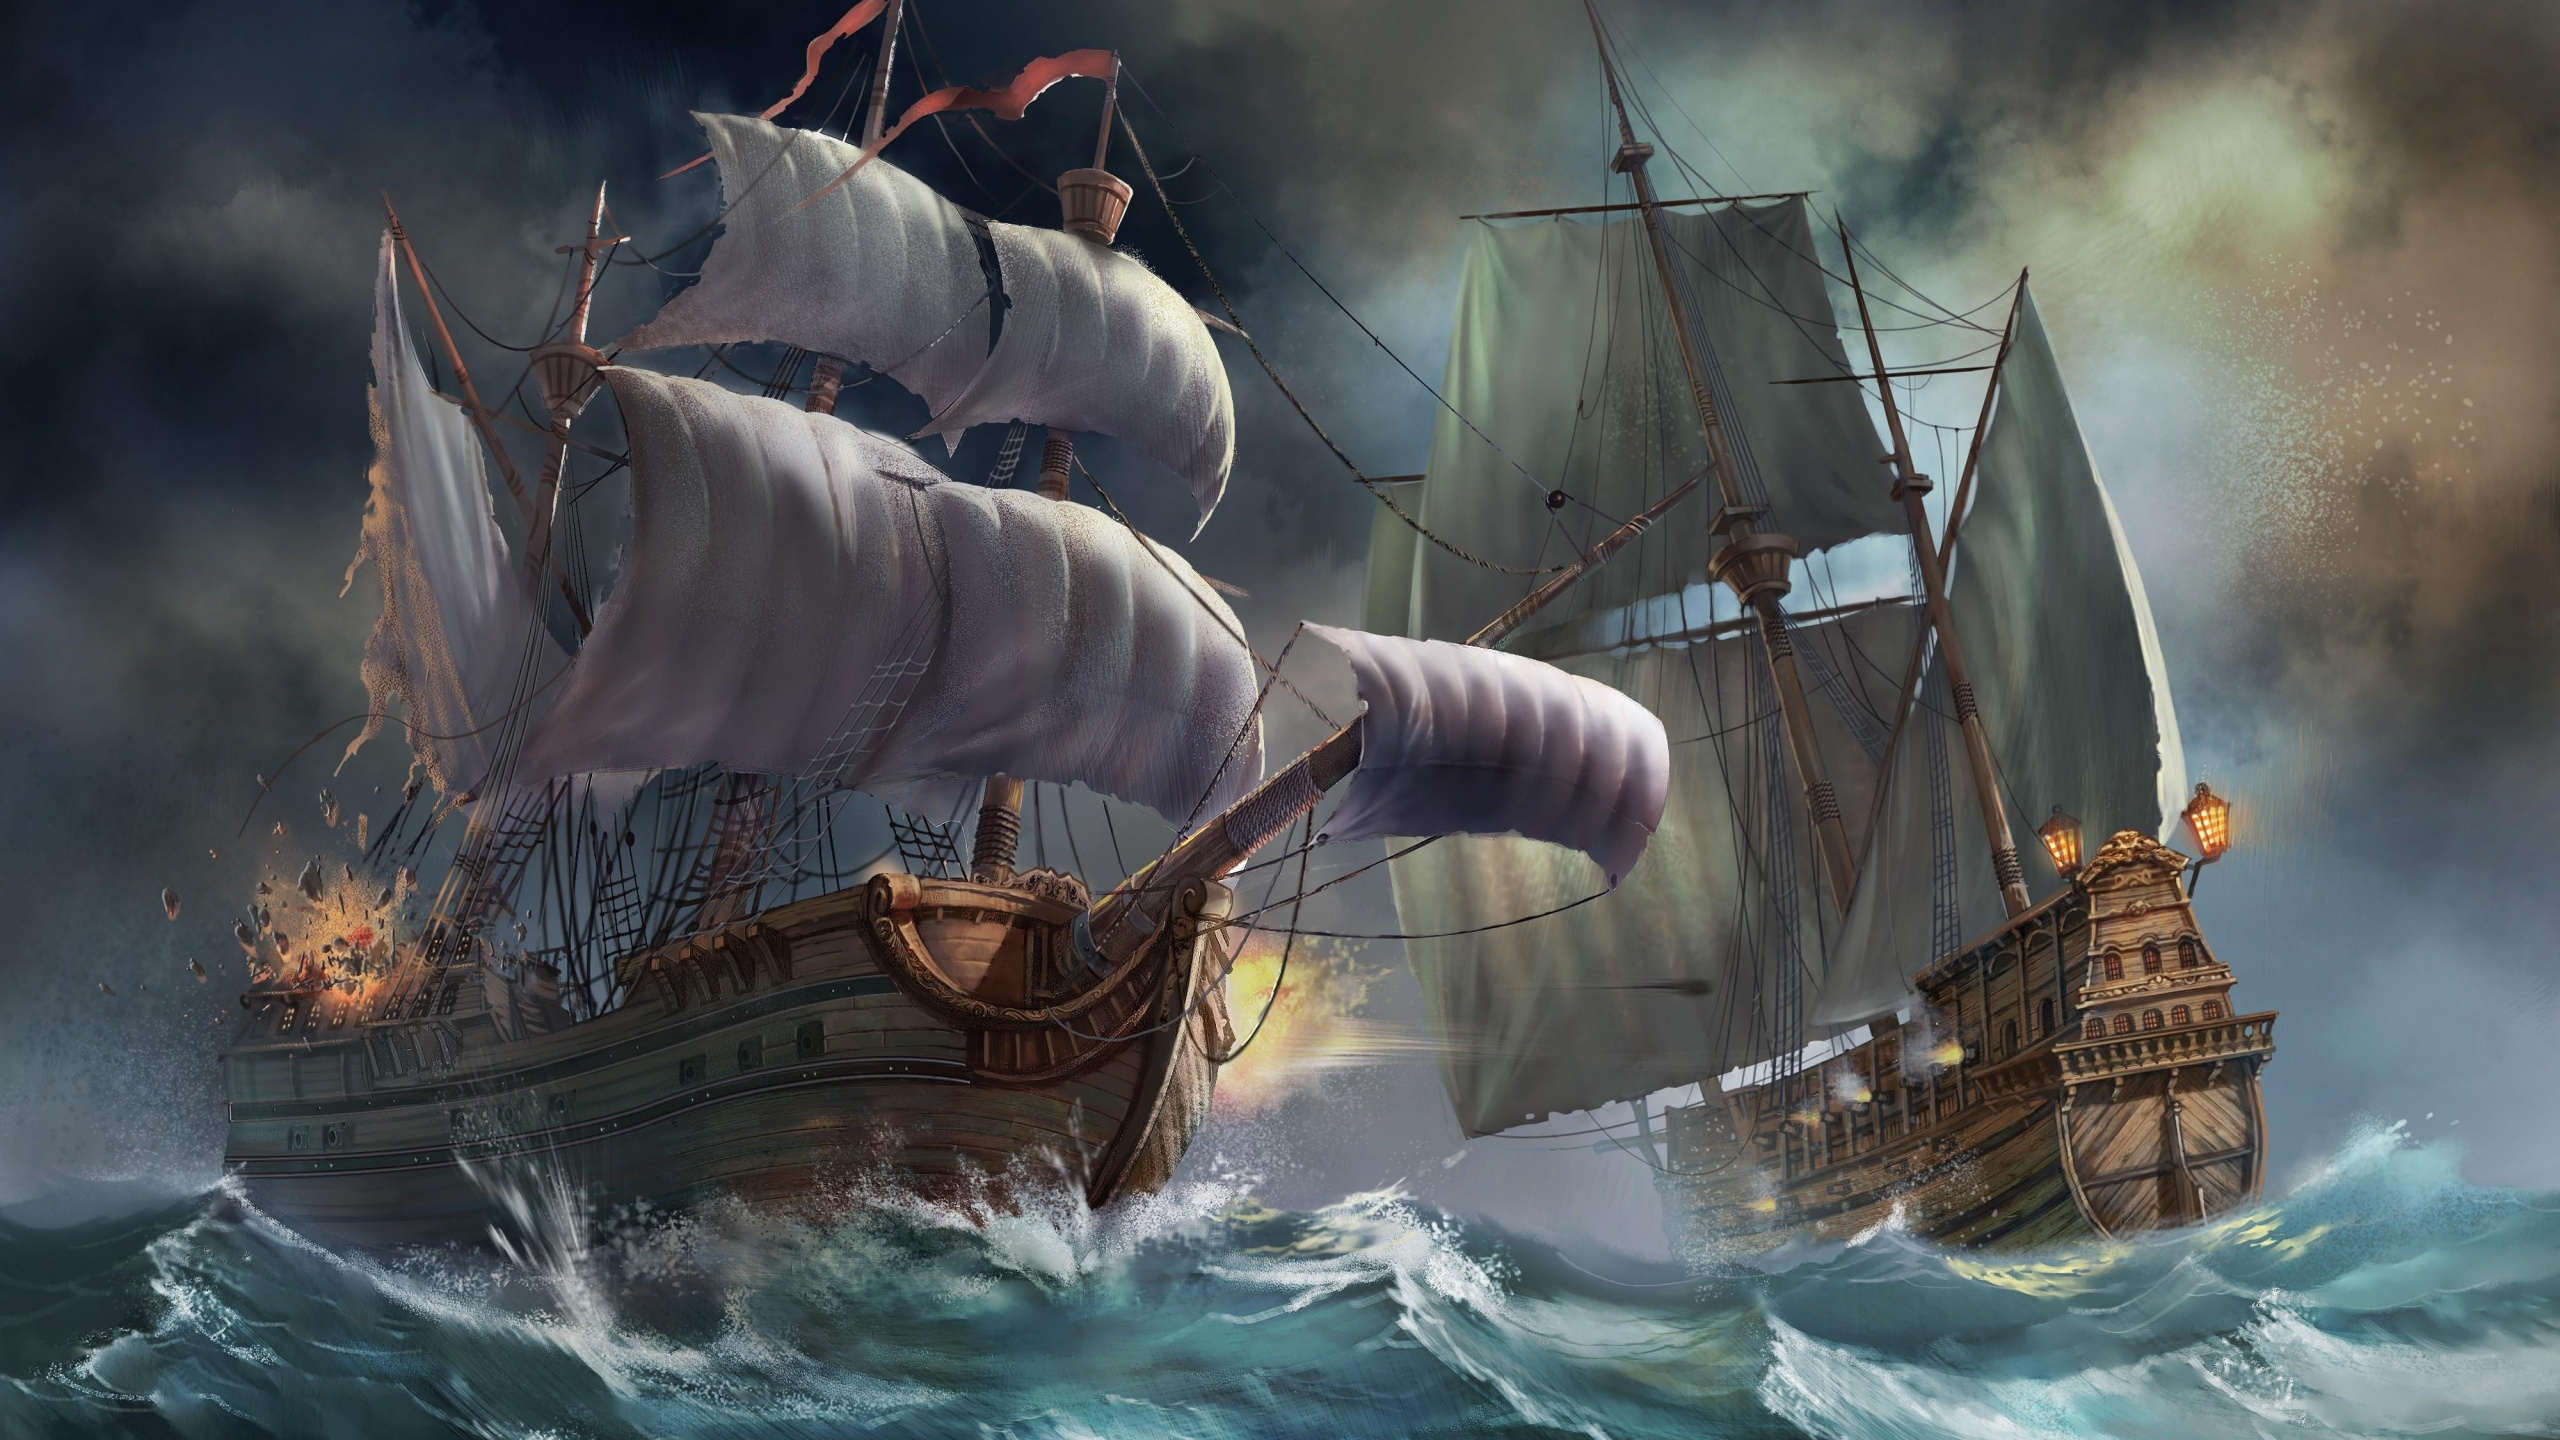 Braunes Und Weißes Segelschiff Auf Dem Wasser. Wallpaper in 2560x1440 Resolution